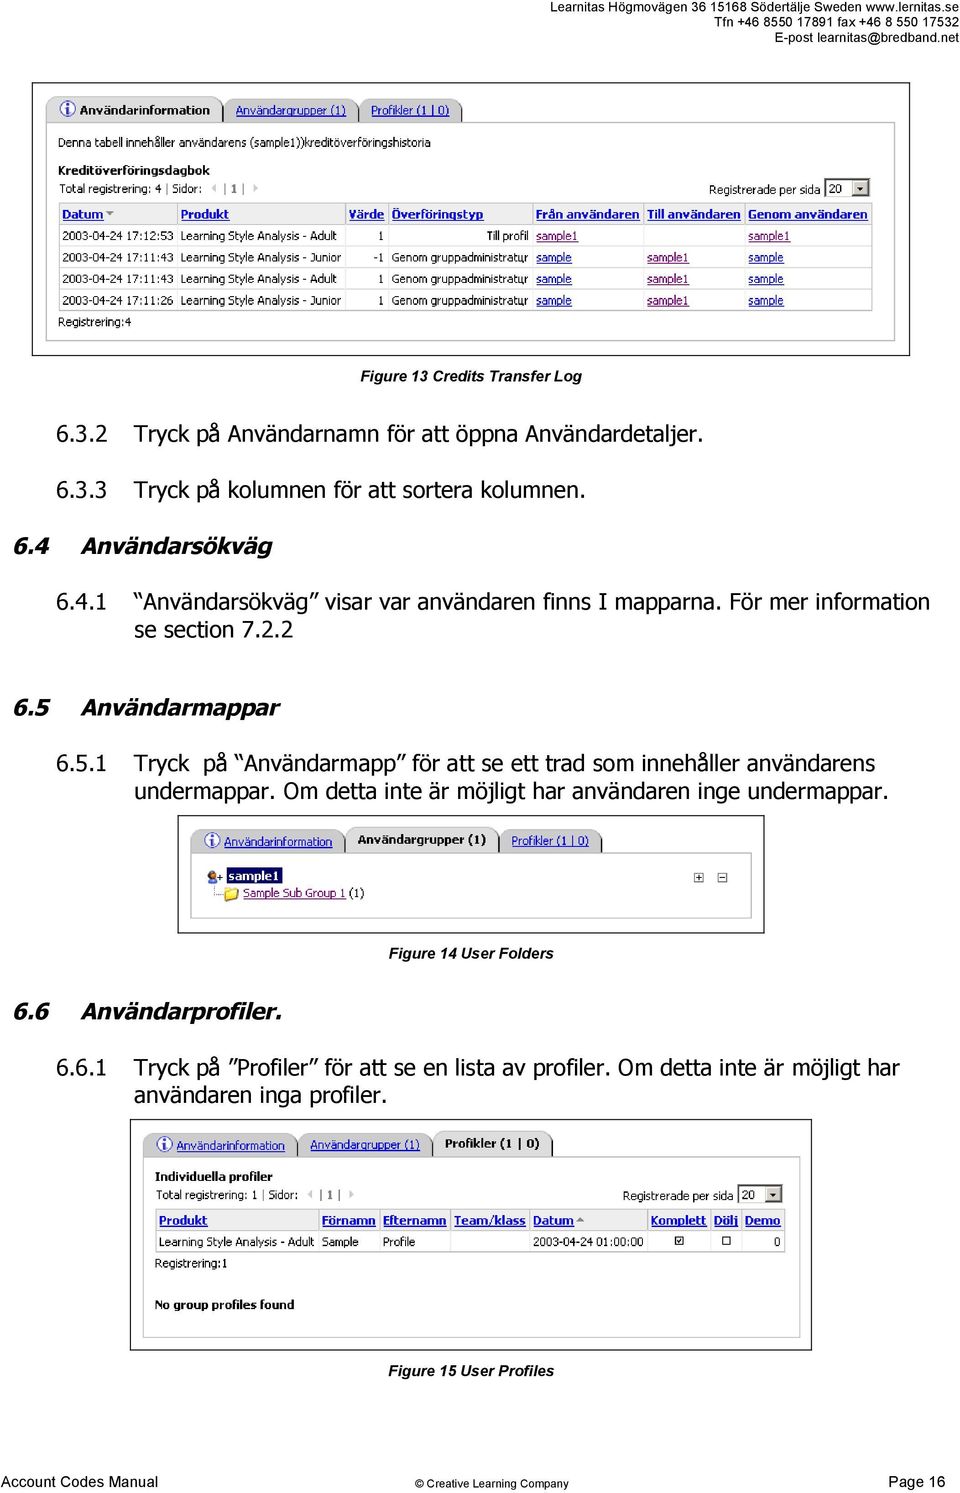 Användarmappar 6.5.1 Tryck på Användarmapp för att se ett trad som innehåller användarens undermappar.